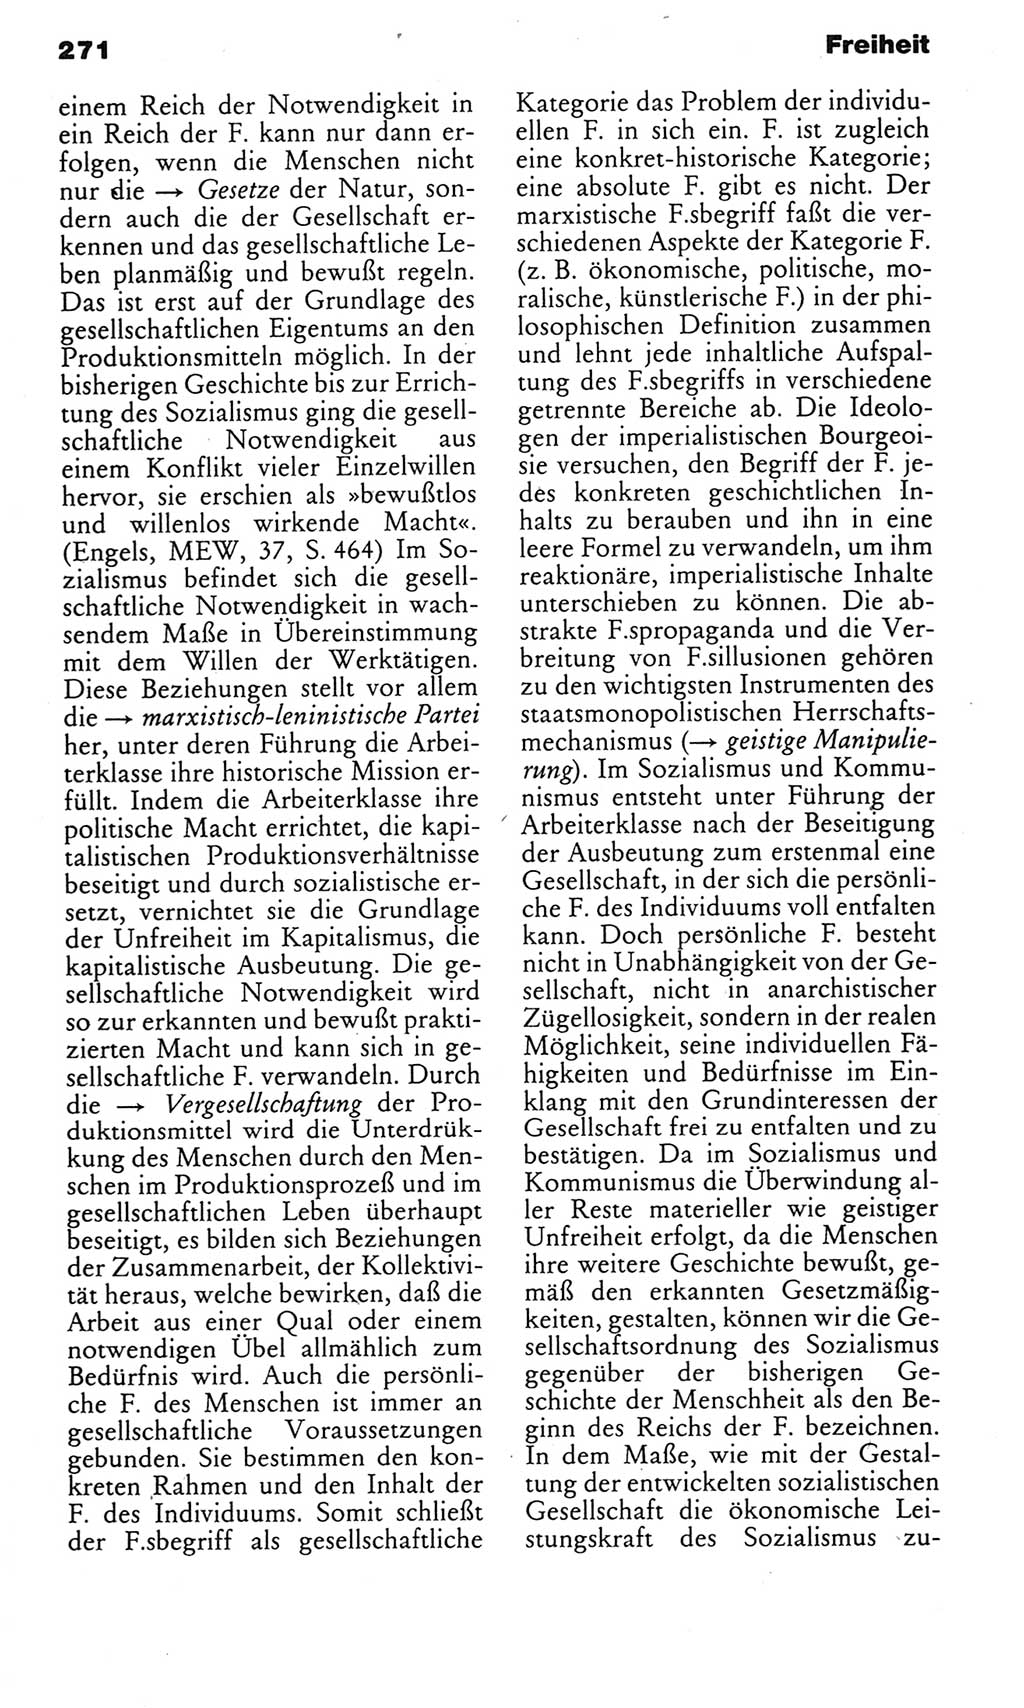 Kleines politisches Wörterbuch [Deutsche Demokratische Republik (DDR)] 1985, Seite 271 (Kl. pol. Wb. DDR 1985, S. 271)